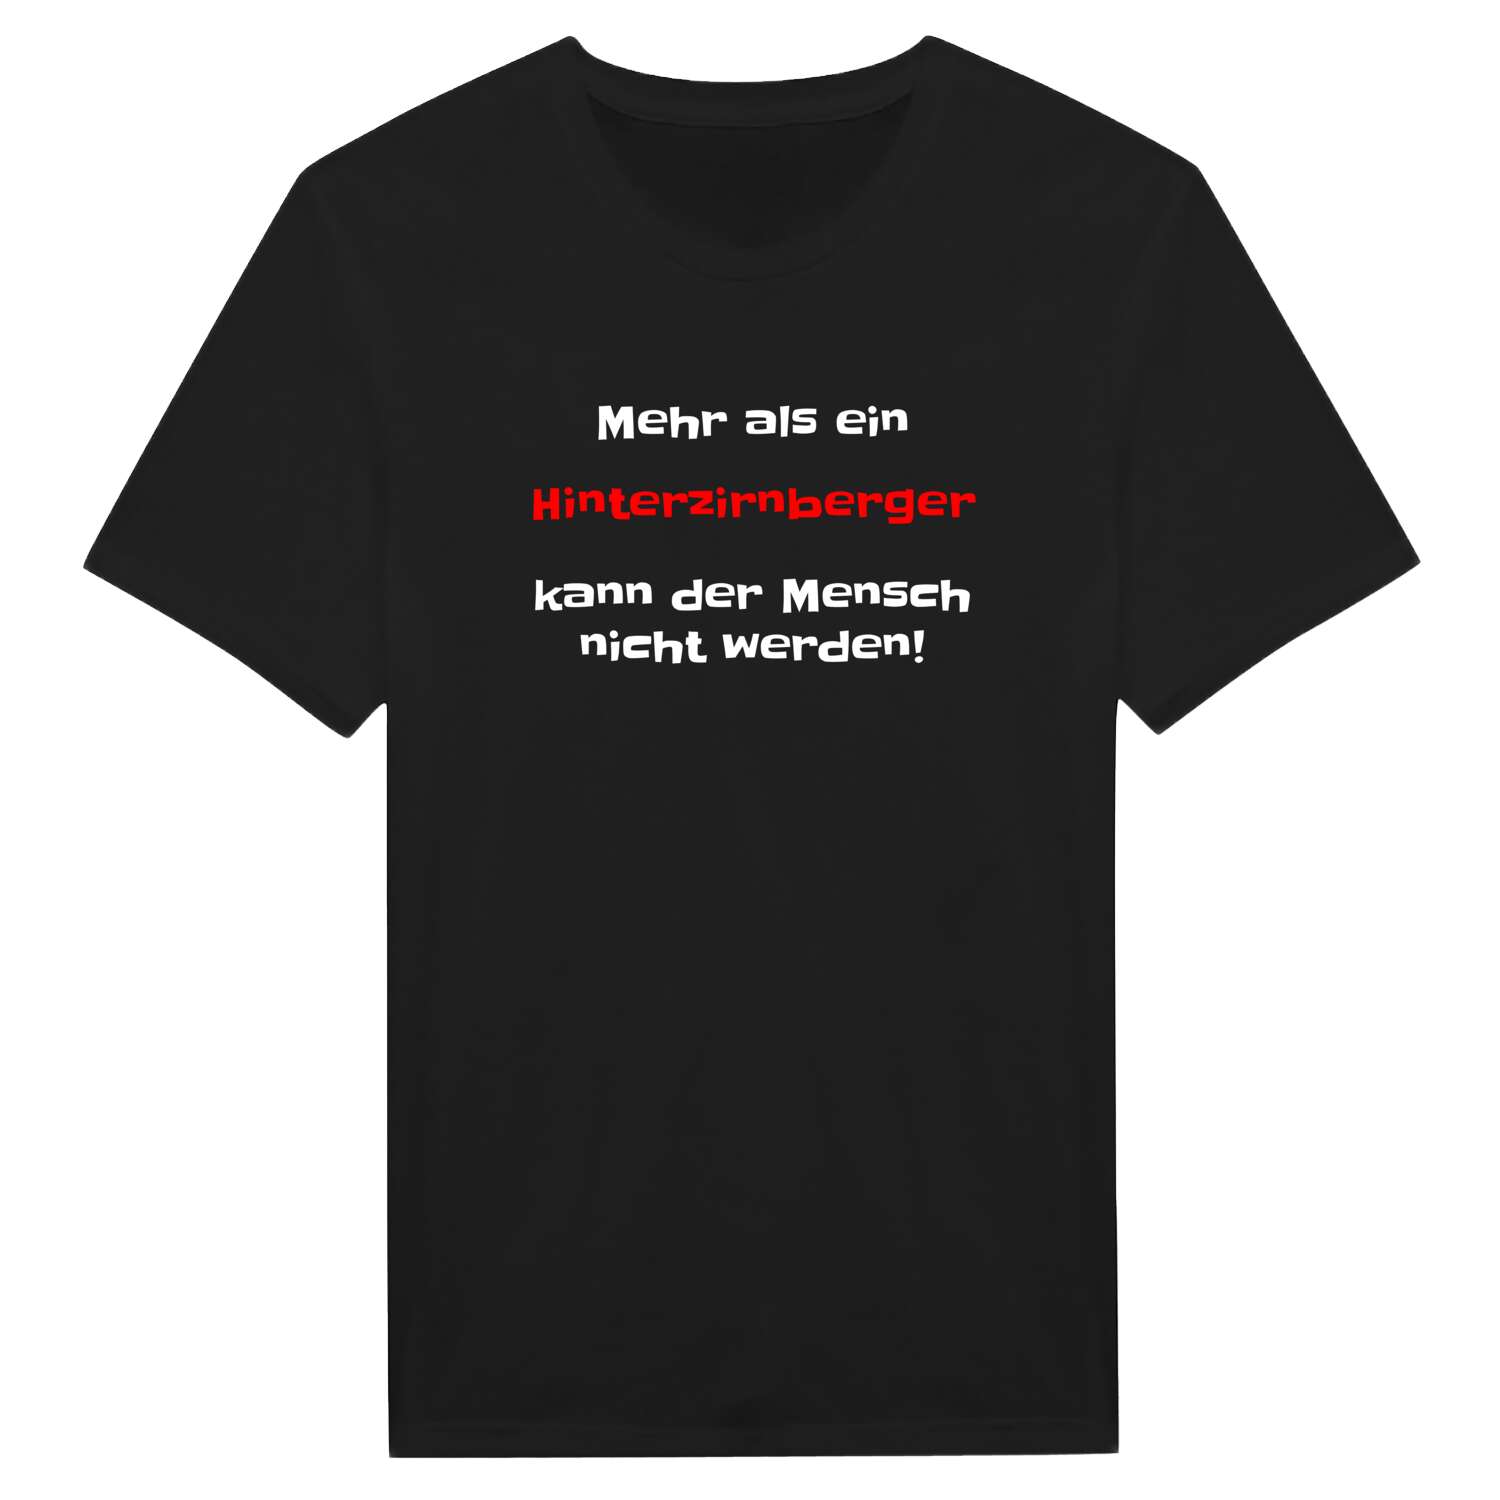 Hinterzirnberg T-Shirt »Mehr als ein«